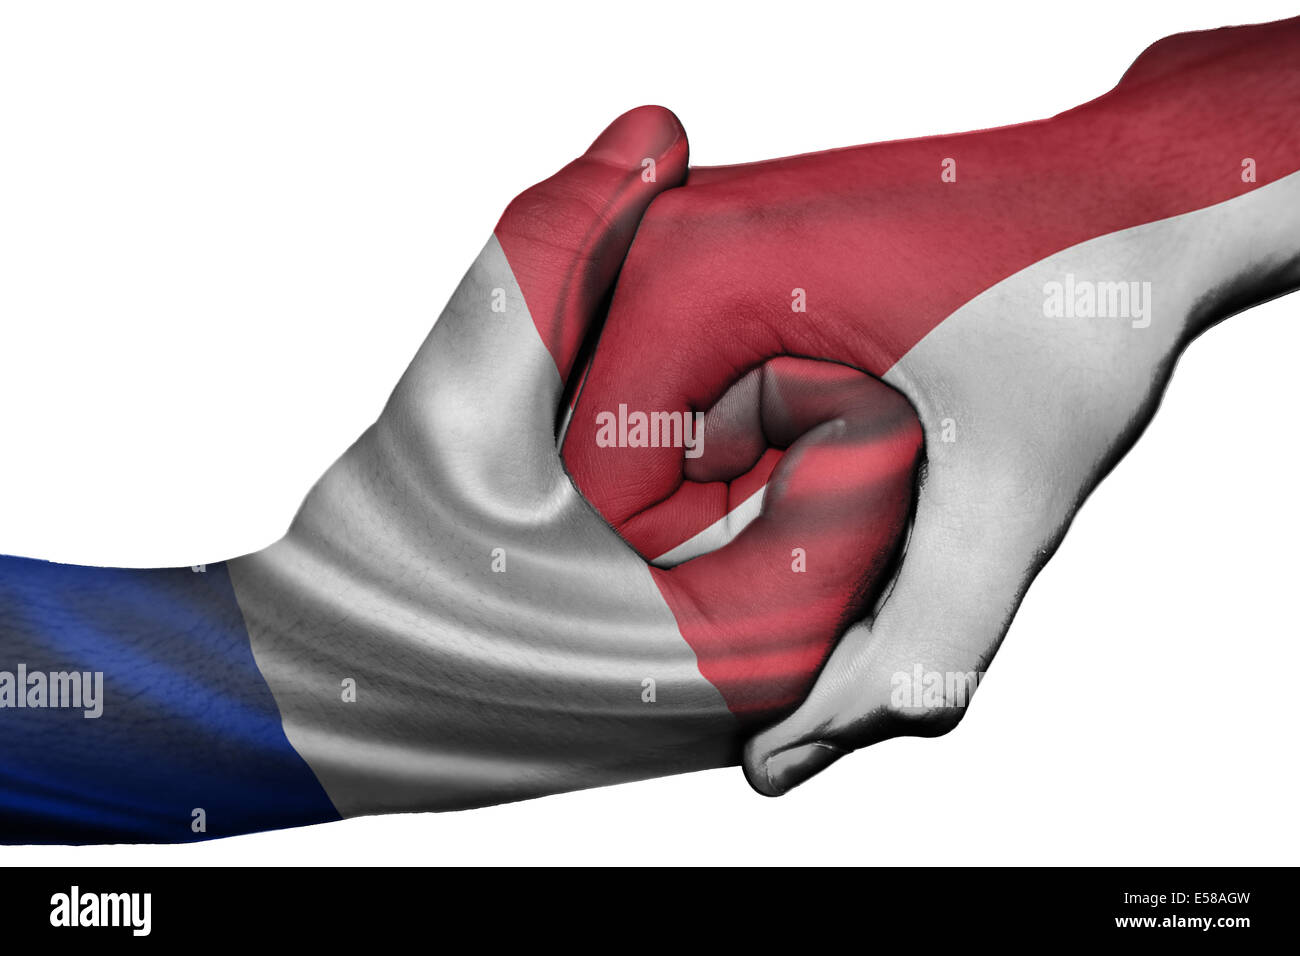 Handshake diplomatiche tra paesi: bandiere di Francia e Indonesia sovradipinta le due mani Foto Stock